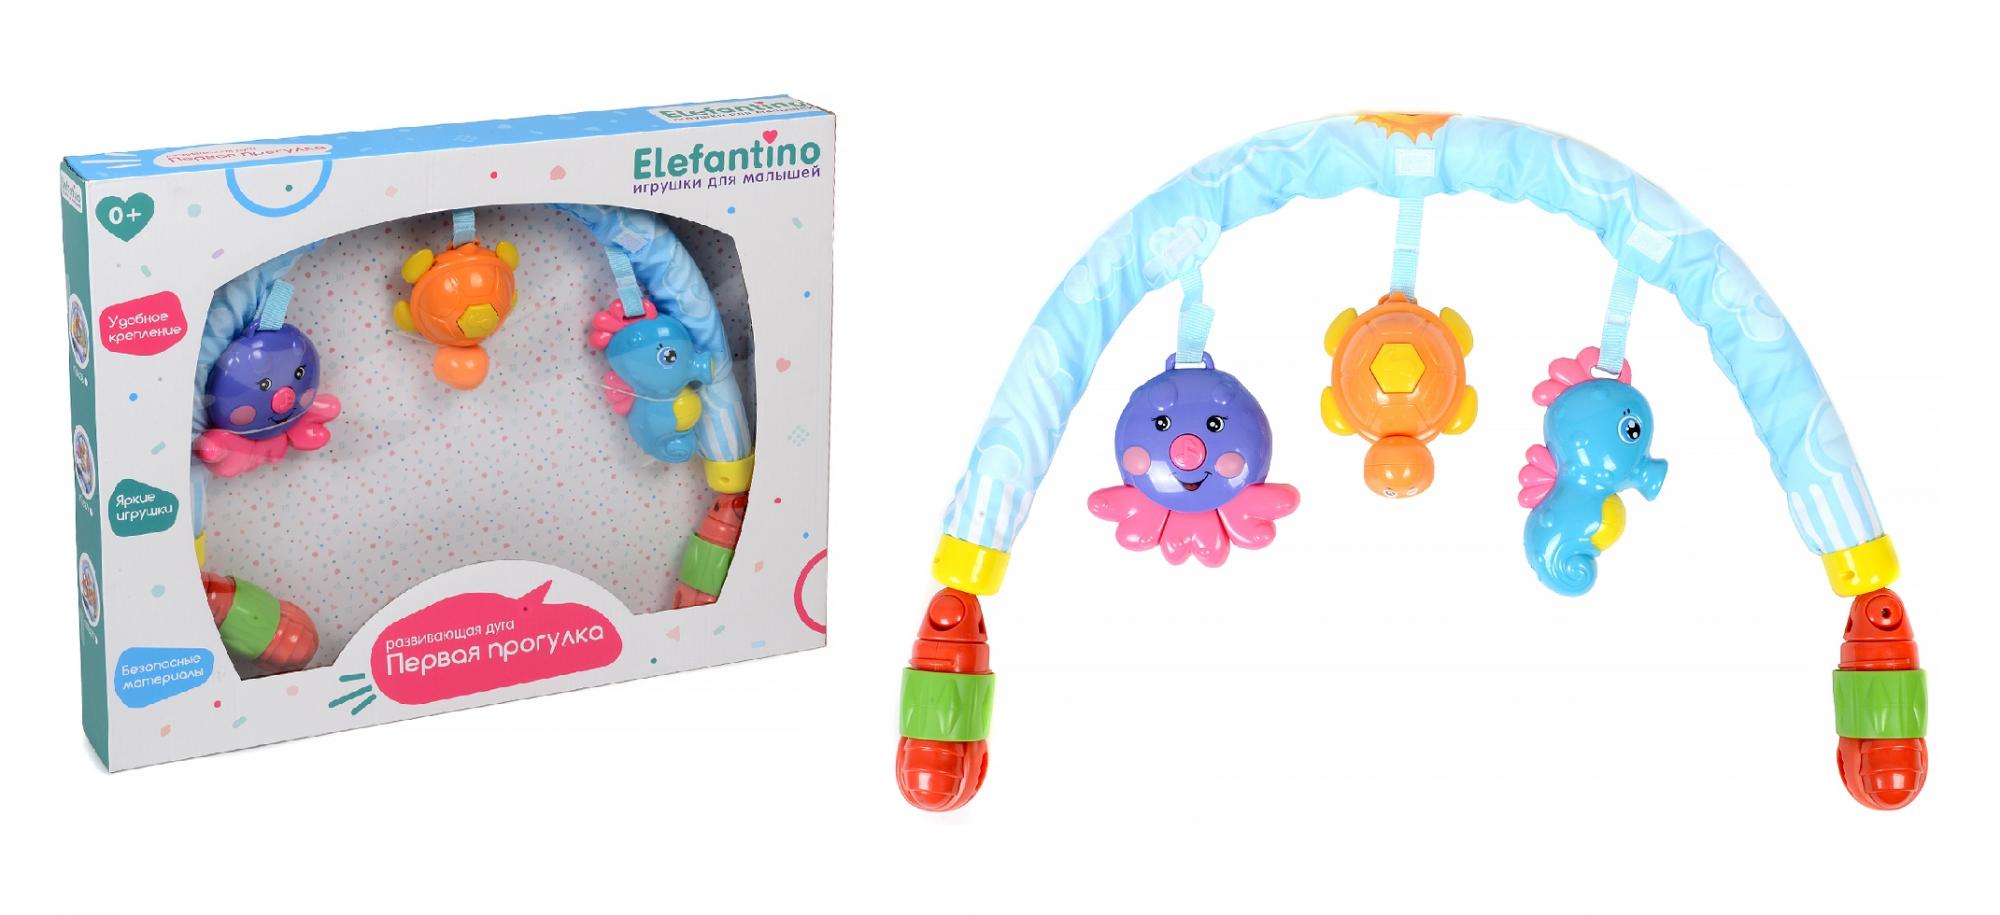 Дуга развивающая Elefantino 3 игрушки с муз, удобное крепление прищепка, в/к 49*6*39 см.